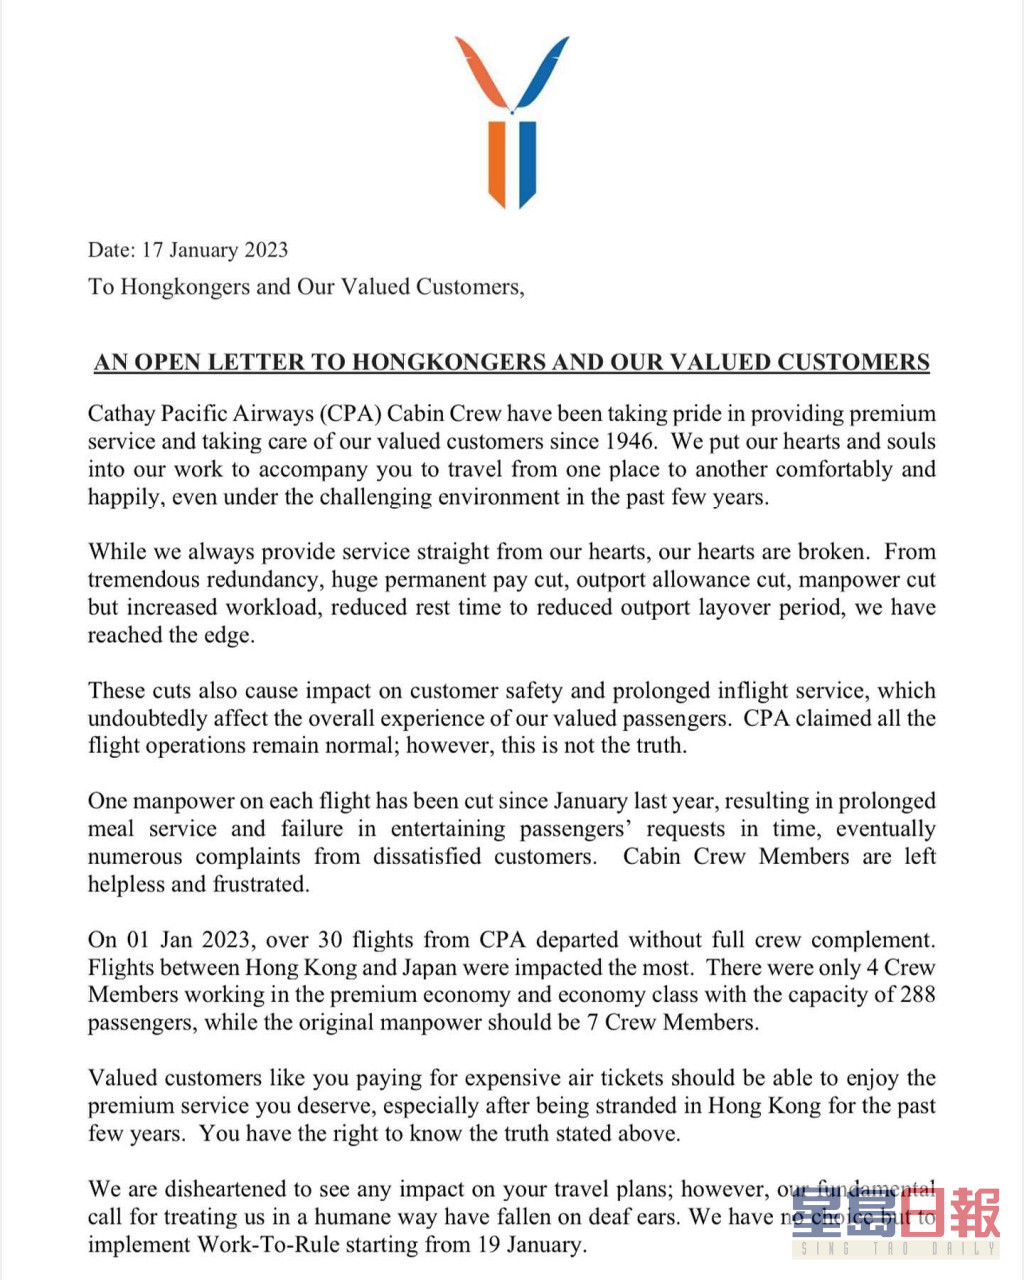 国泰航空公司空中服务员工会公开信。国泰航空公司空中服务员工会FB图片